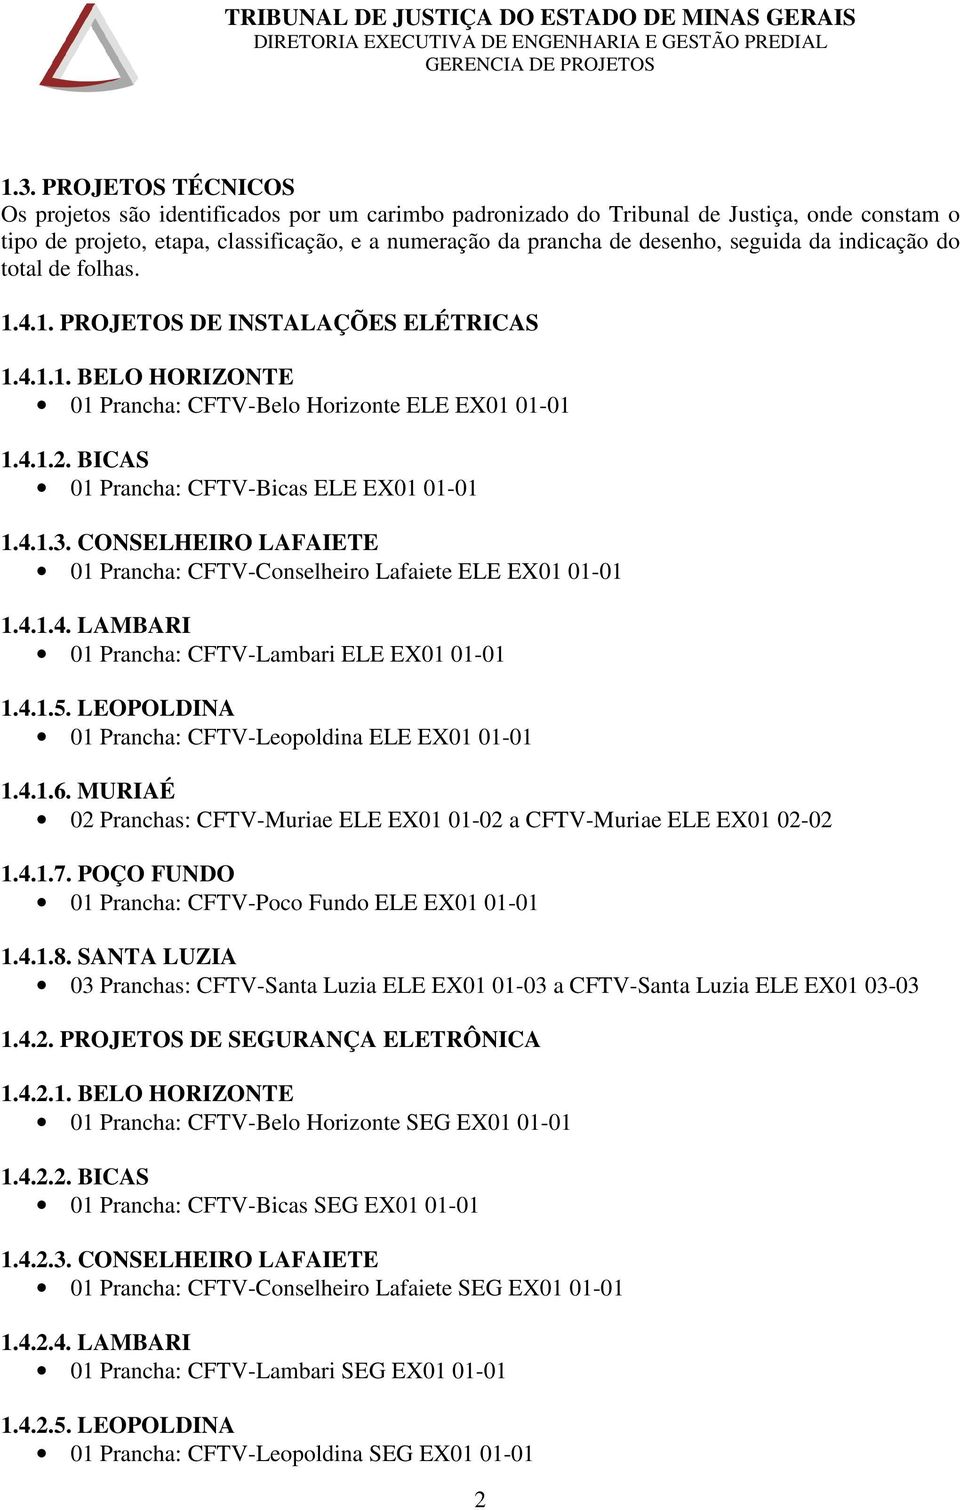 BICAS 01 Prancha: CFTV-Bicas ELE EX01 01-01 1.4.1.3. CONSELHEIRO LAFAIETE 01 Prancha: CFTV-Conselheiro Lafaiete ELE EX01 01-01 1.4.1.4. LAMBARI 01 Prancha: CFTV-Lambari ELE EX01 01-01 1.4.1.5.